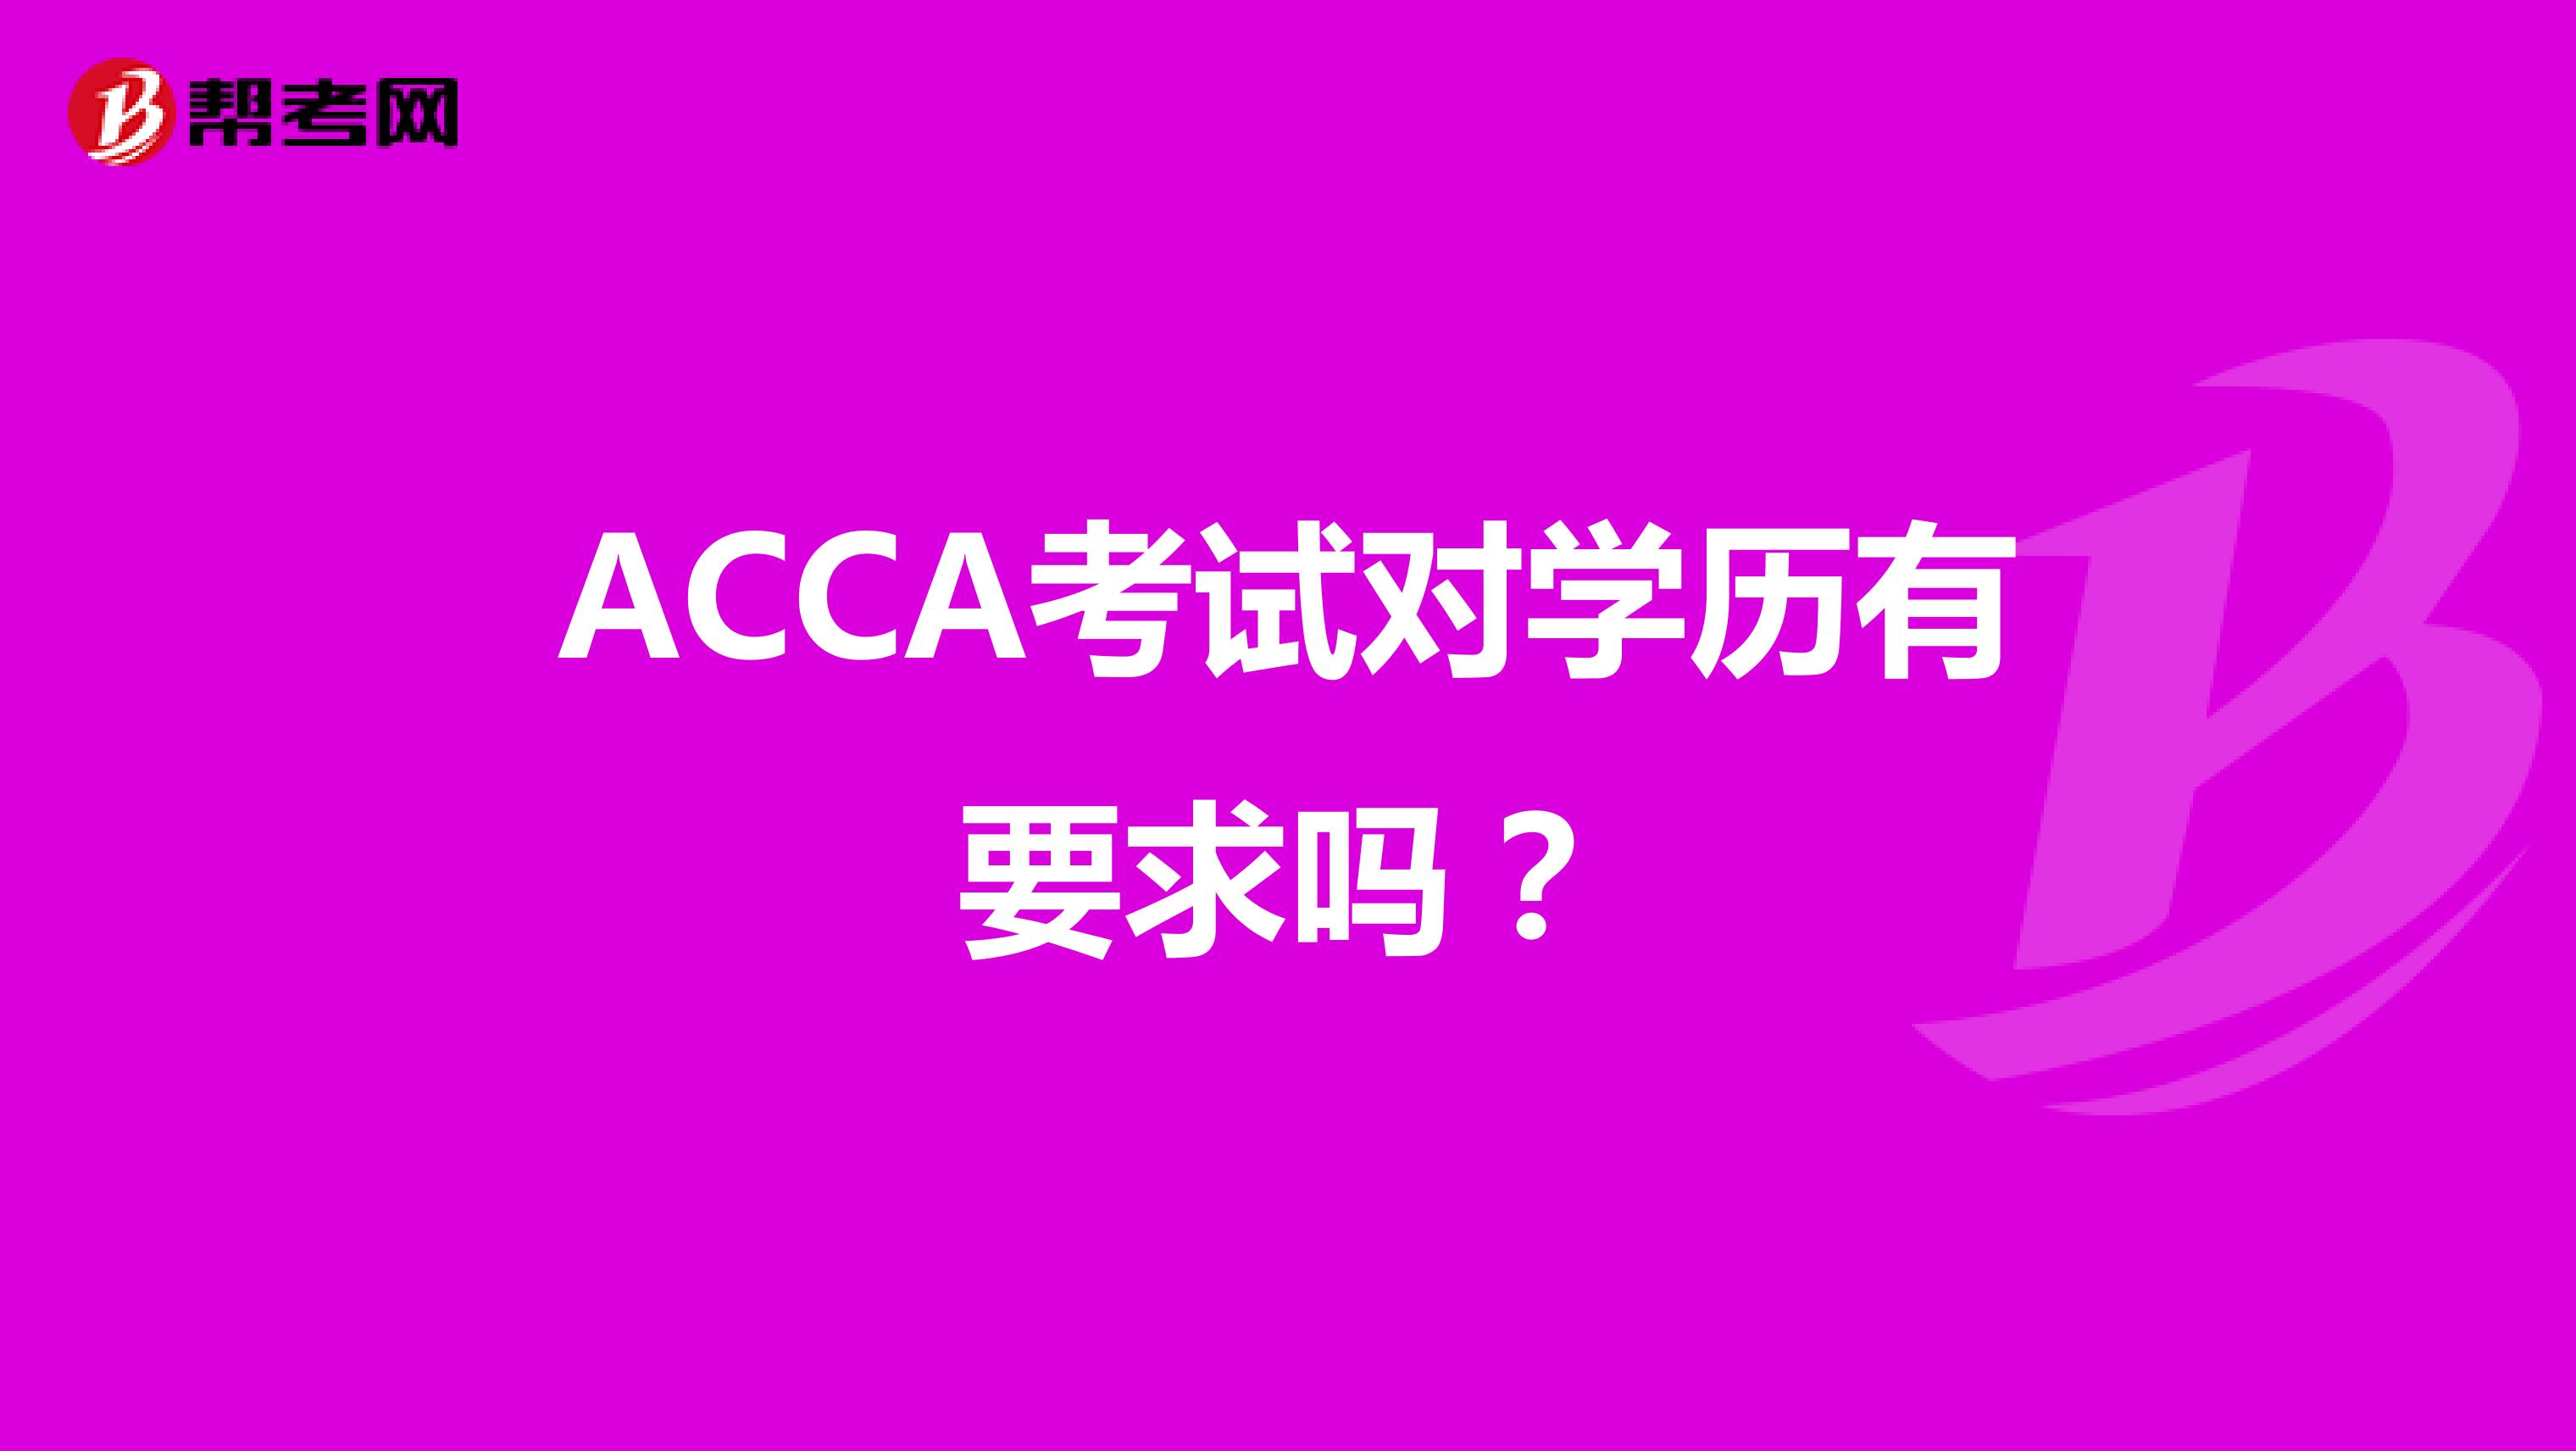 ACCA考试对学历有要求吗？